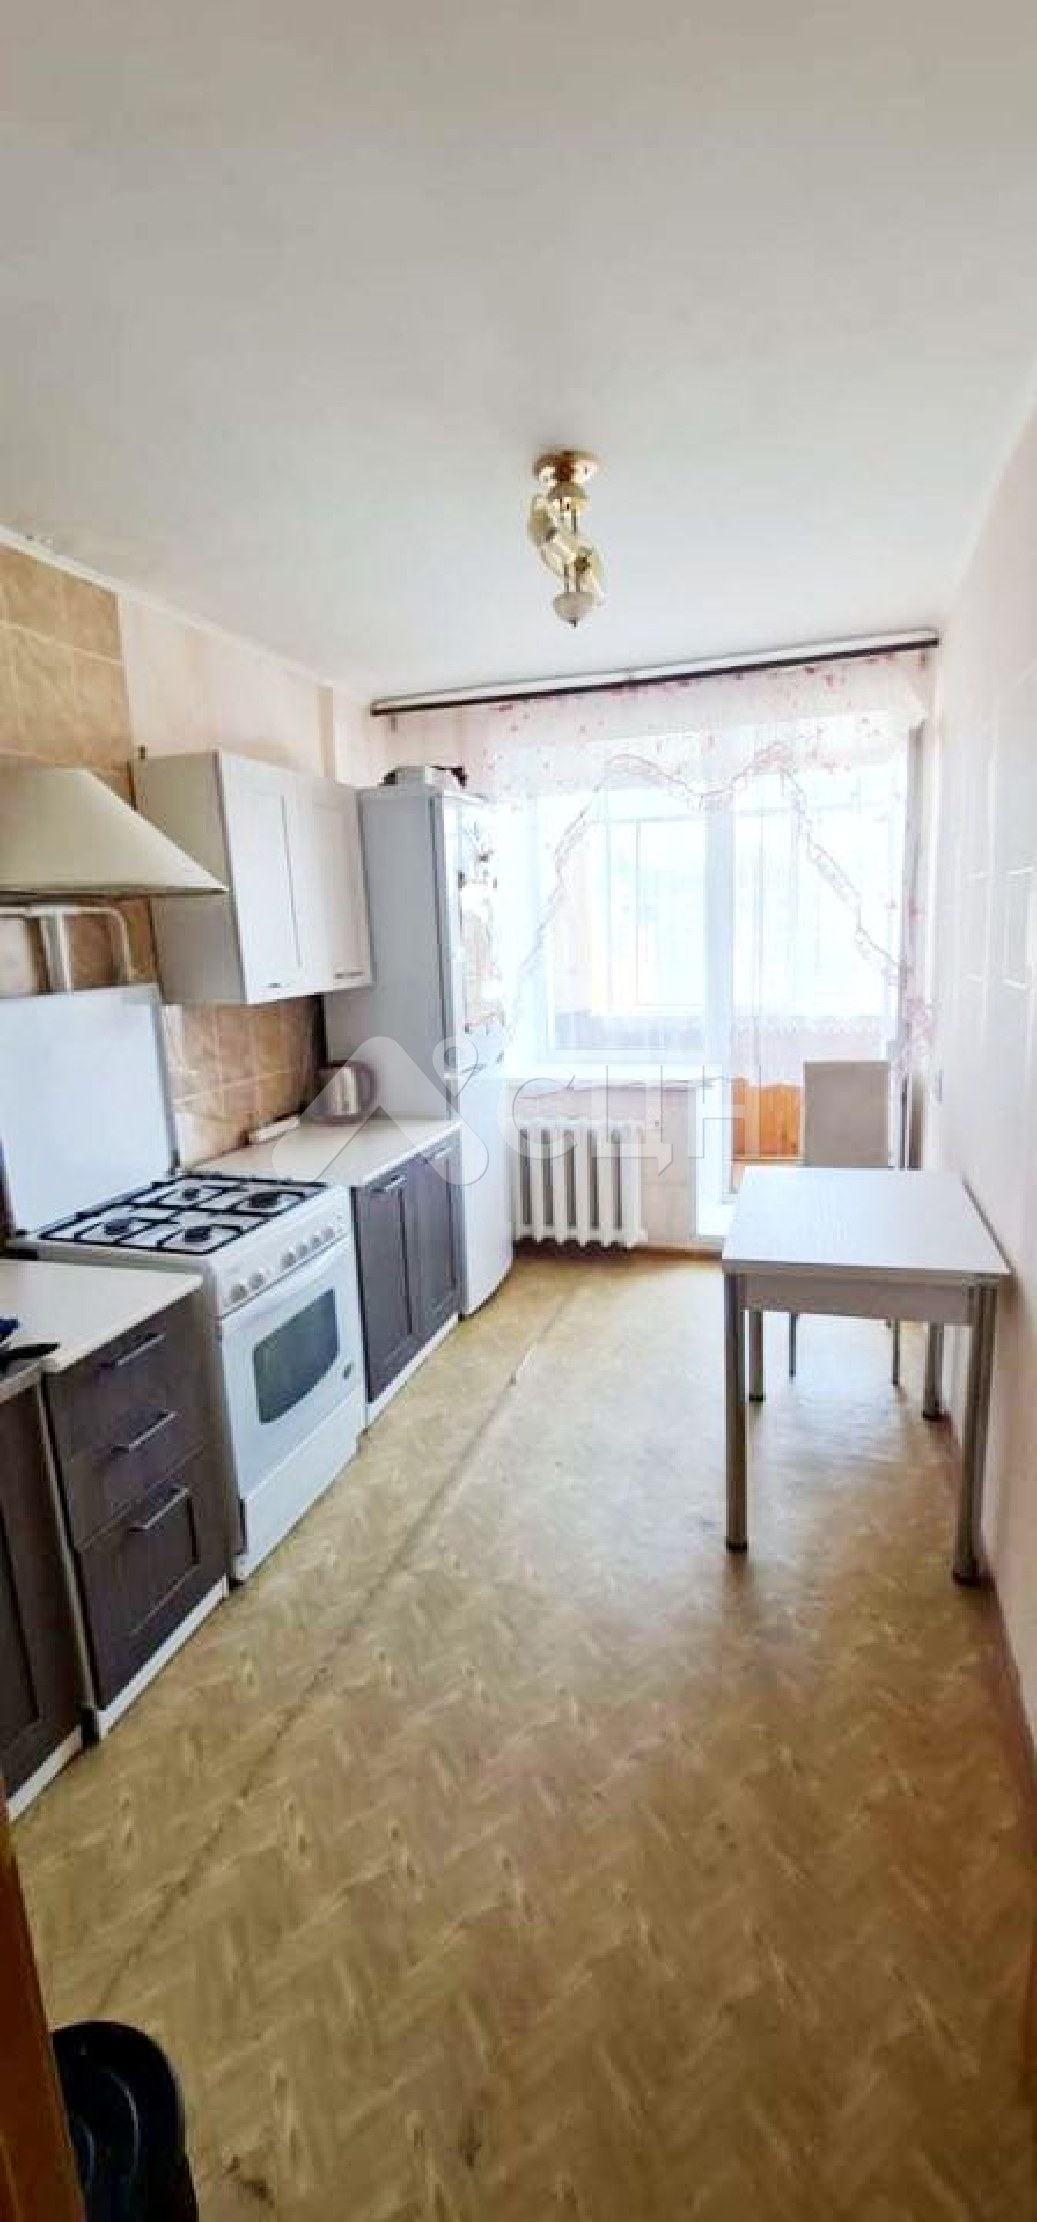 саров жилье
: Г. Сатис, улица Заводская, 12, 2-комн квартира, этаж 3 из 3, продажа.